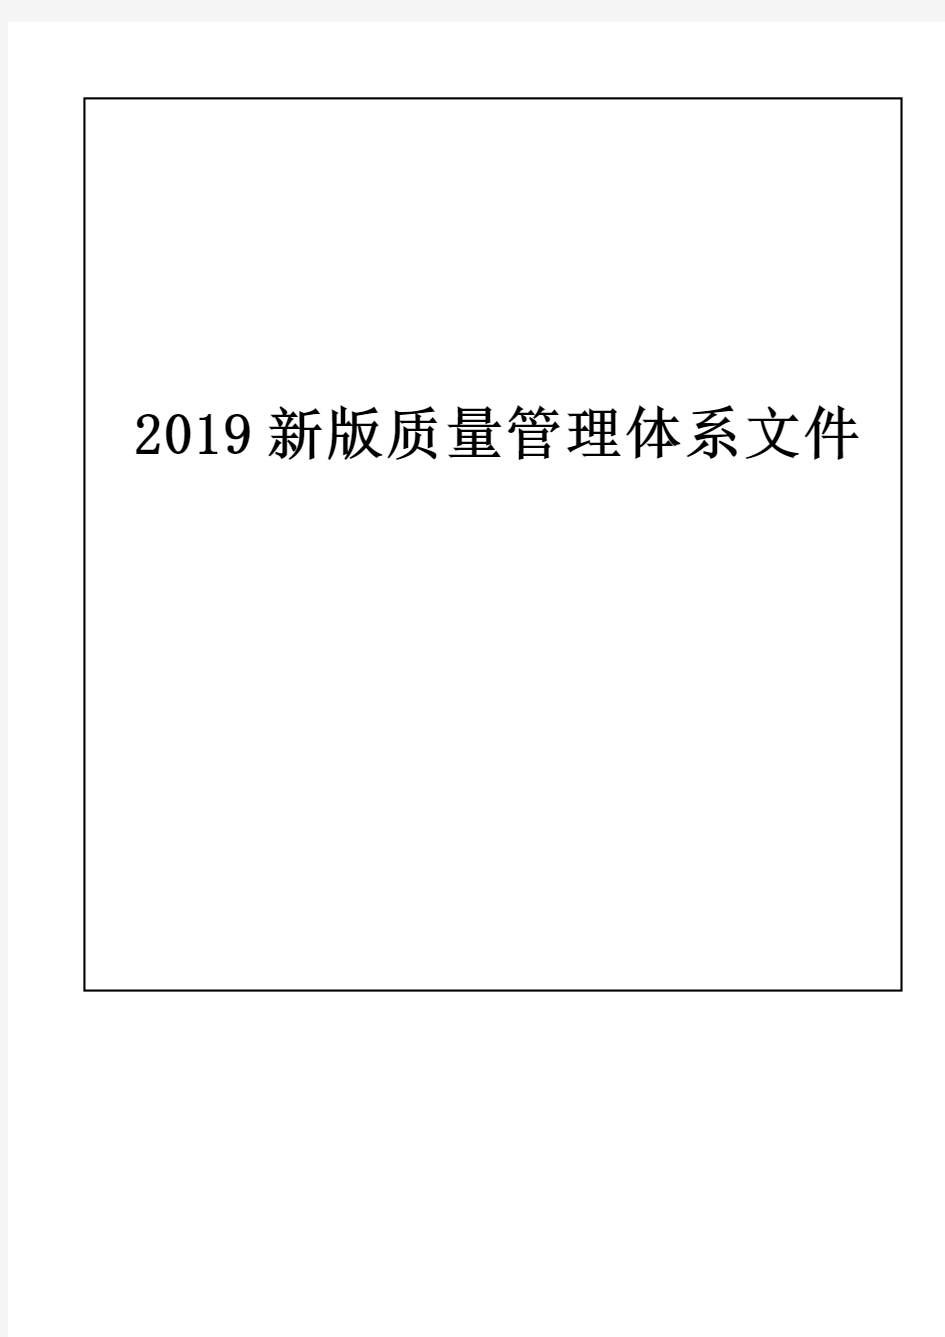 2019新版质量管理体系文件